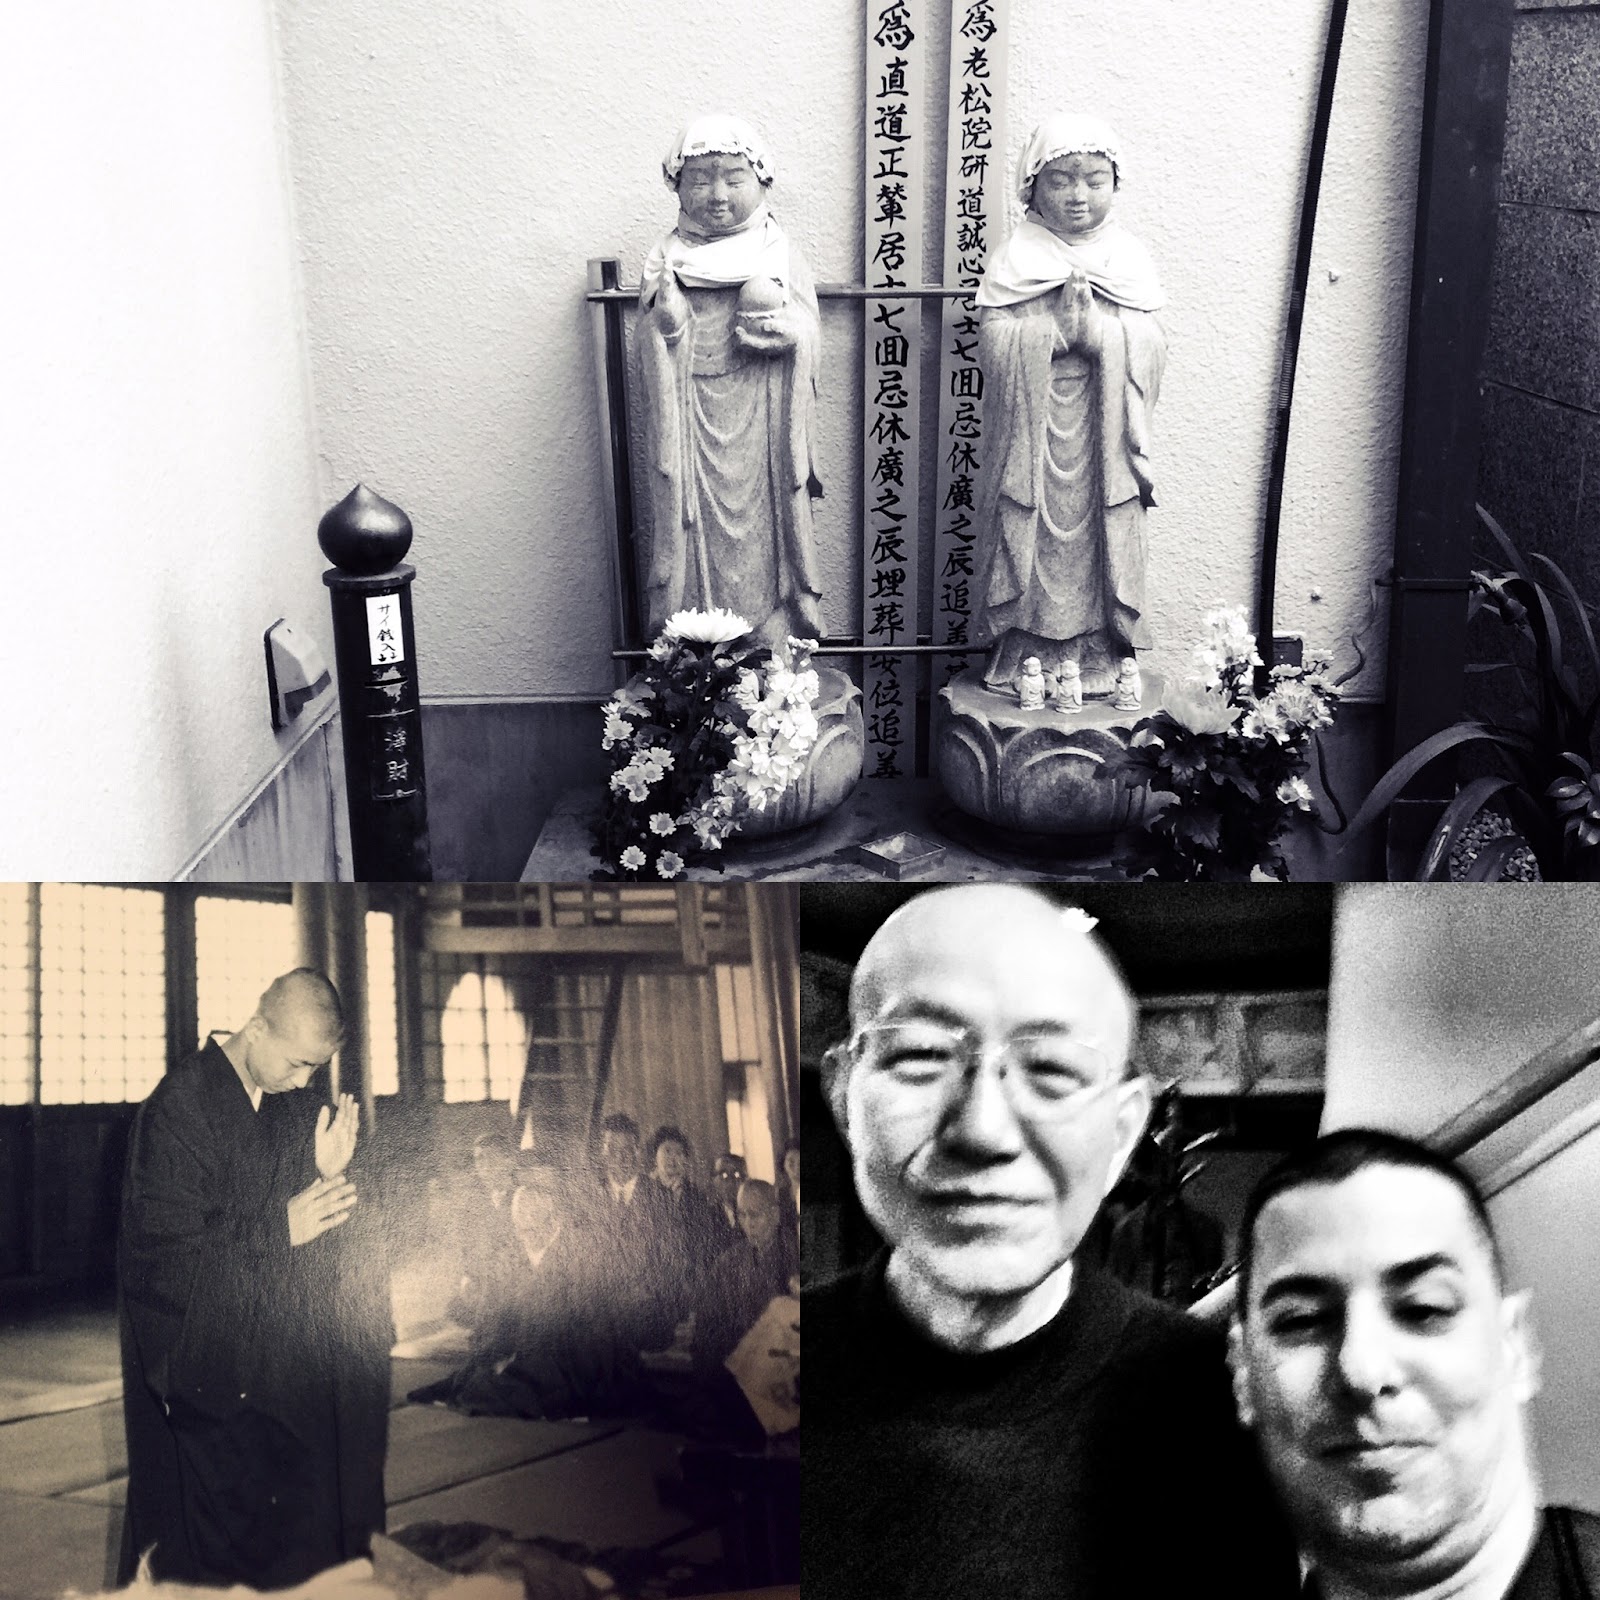 Various pictures of Jake Adelstein's zen master.